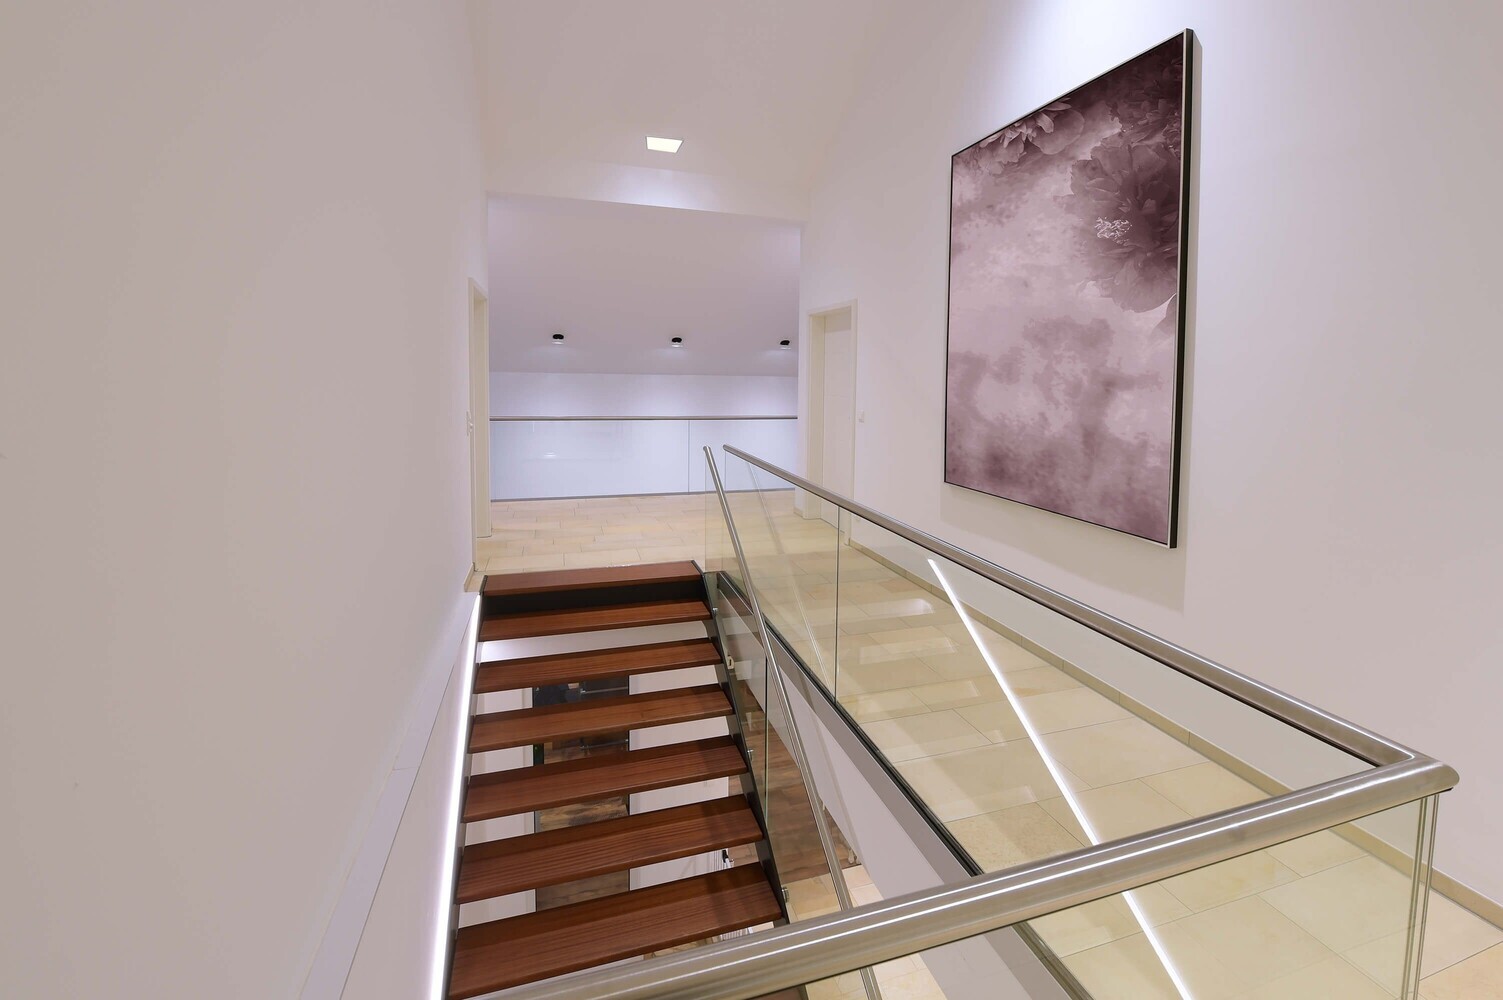 Stilvolles LED Panel der Marke Deko-Light mit stromkonstanter Funktion, perfekt für moderne Raumgestaltung